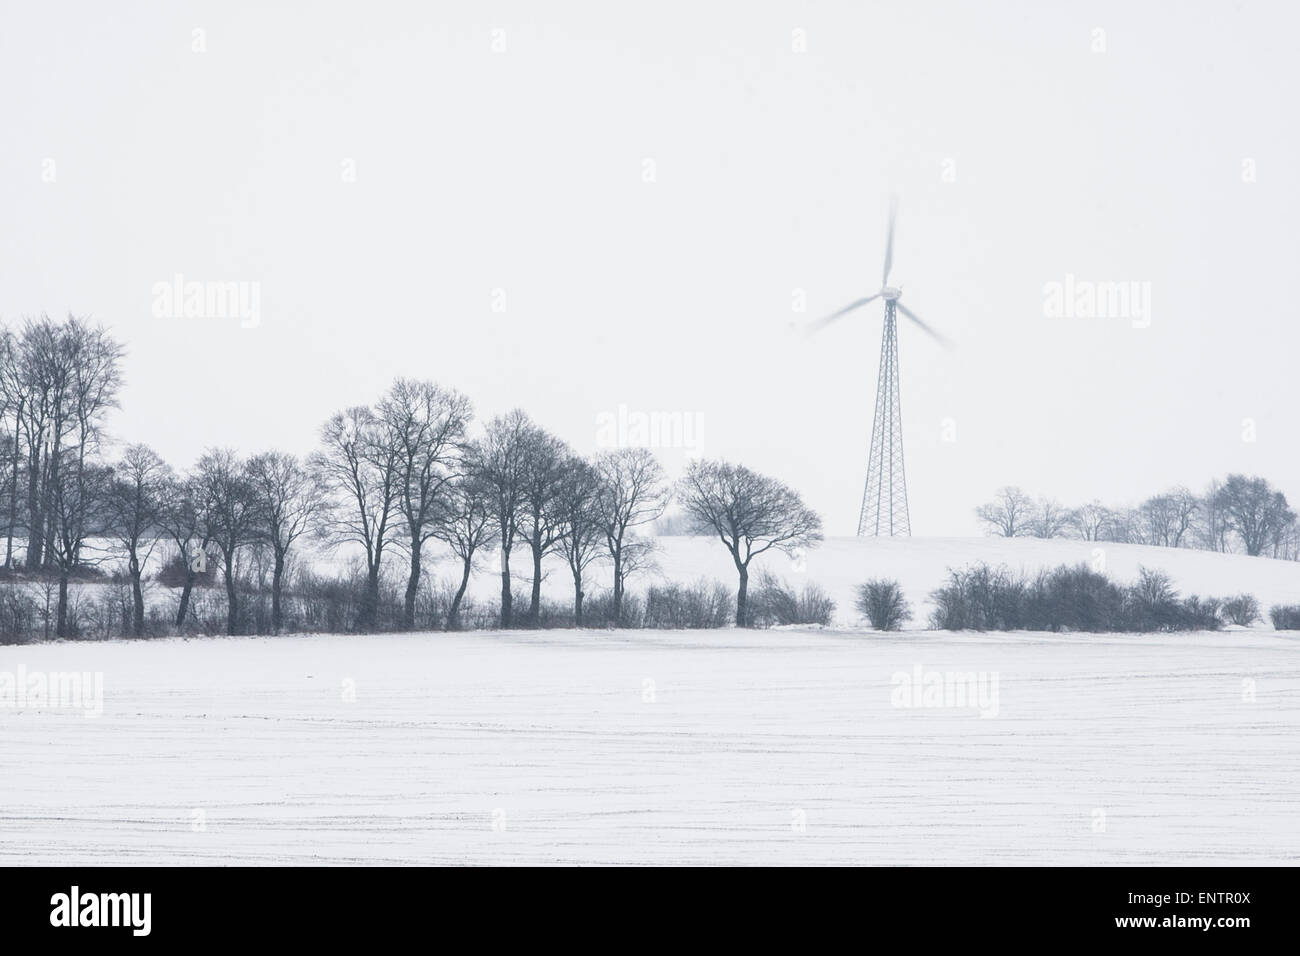 La prima turbina eolica in Polonia, situato in Starbienino, è visibile qui nel paesaggio innevato. Foto Stock